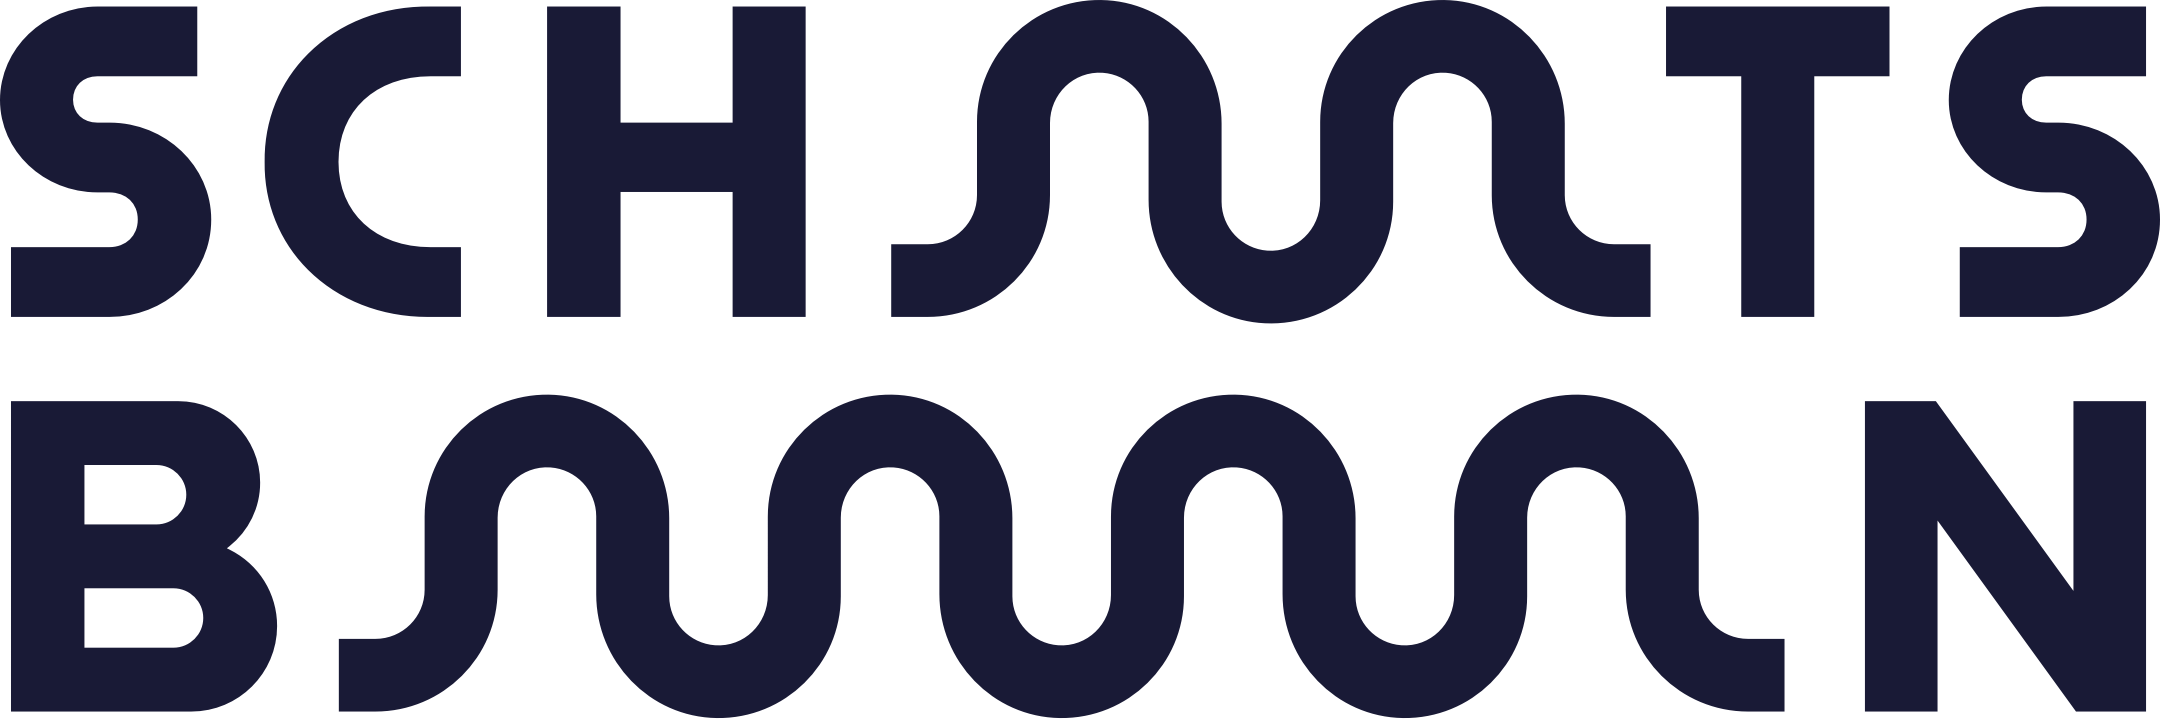 Schaatsbaan Logo